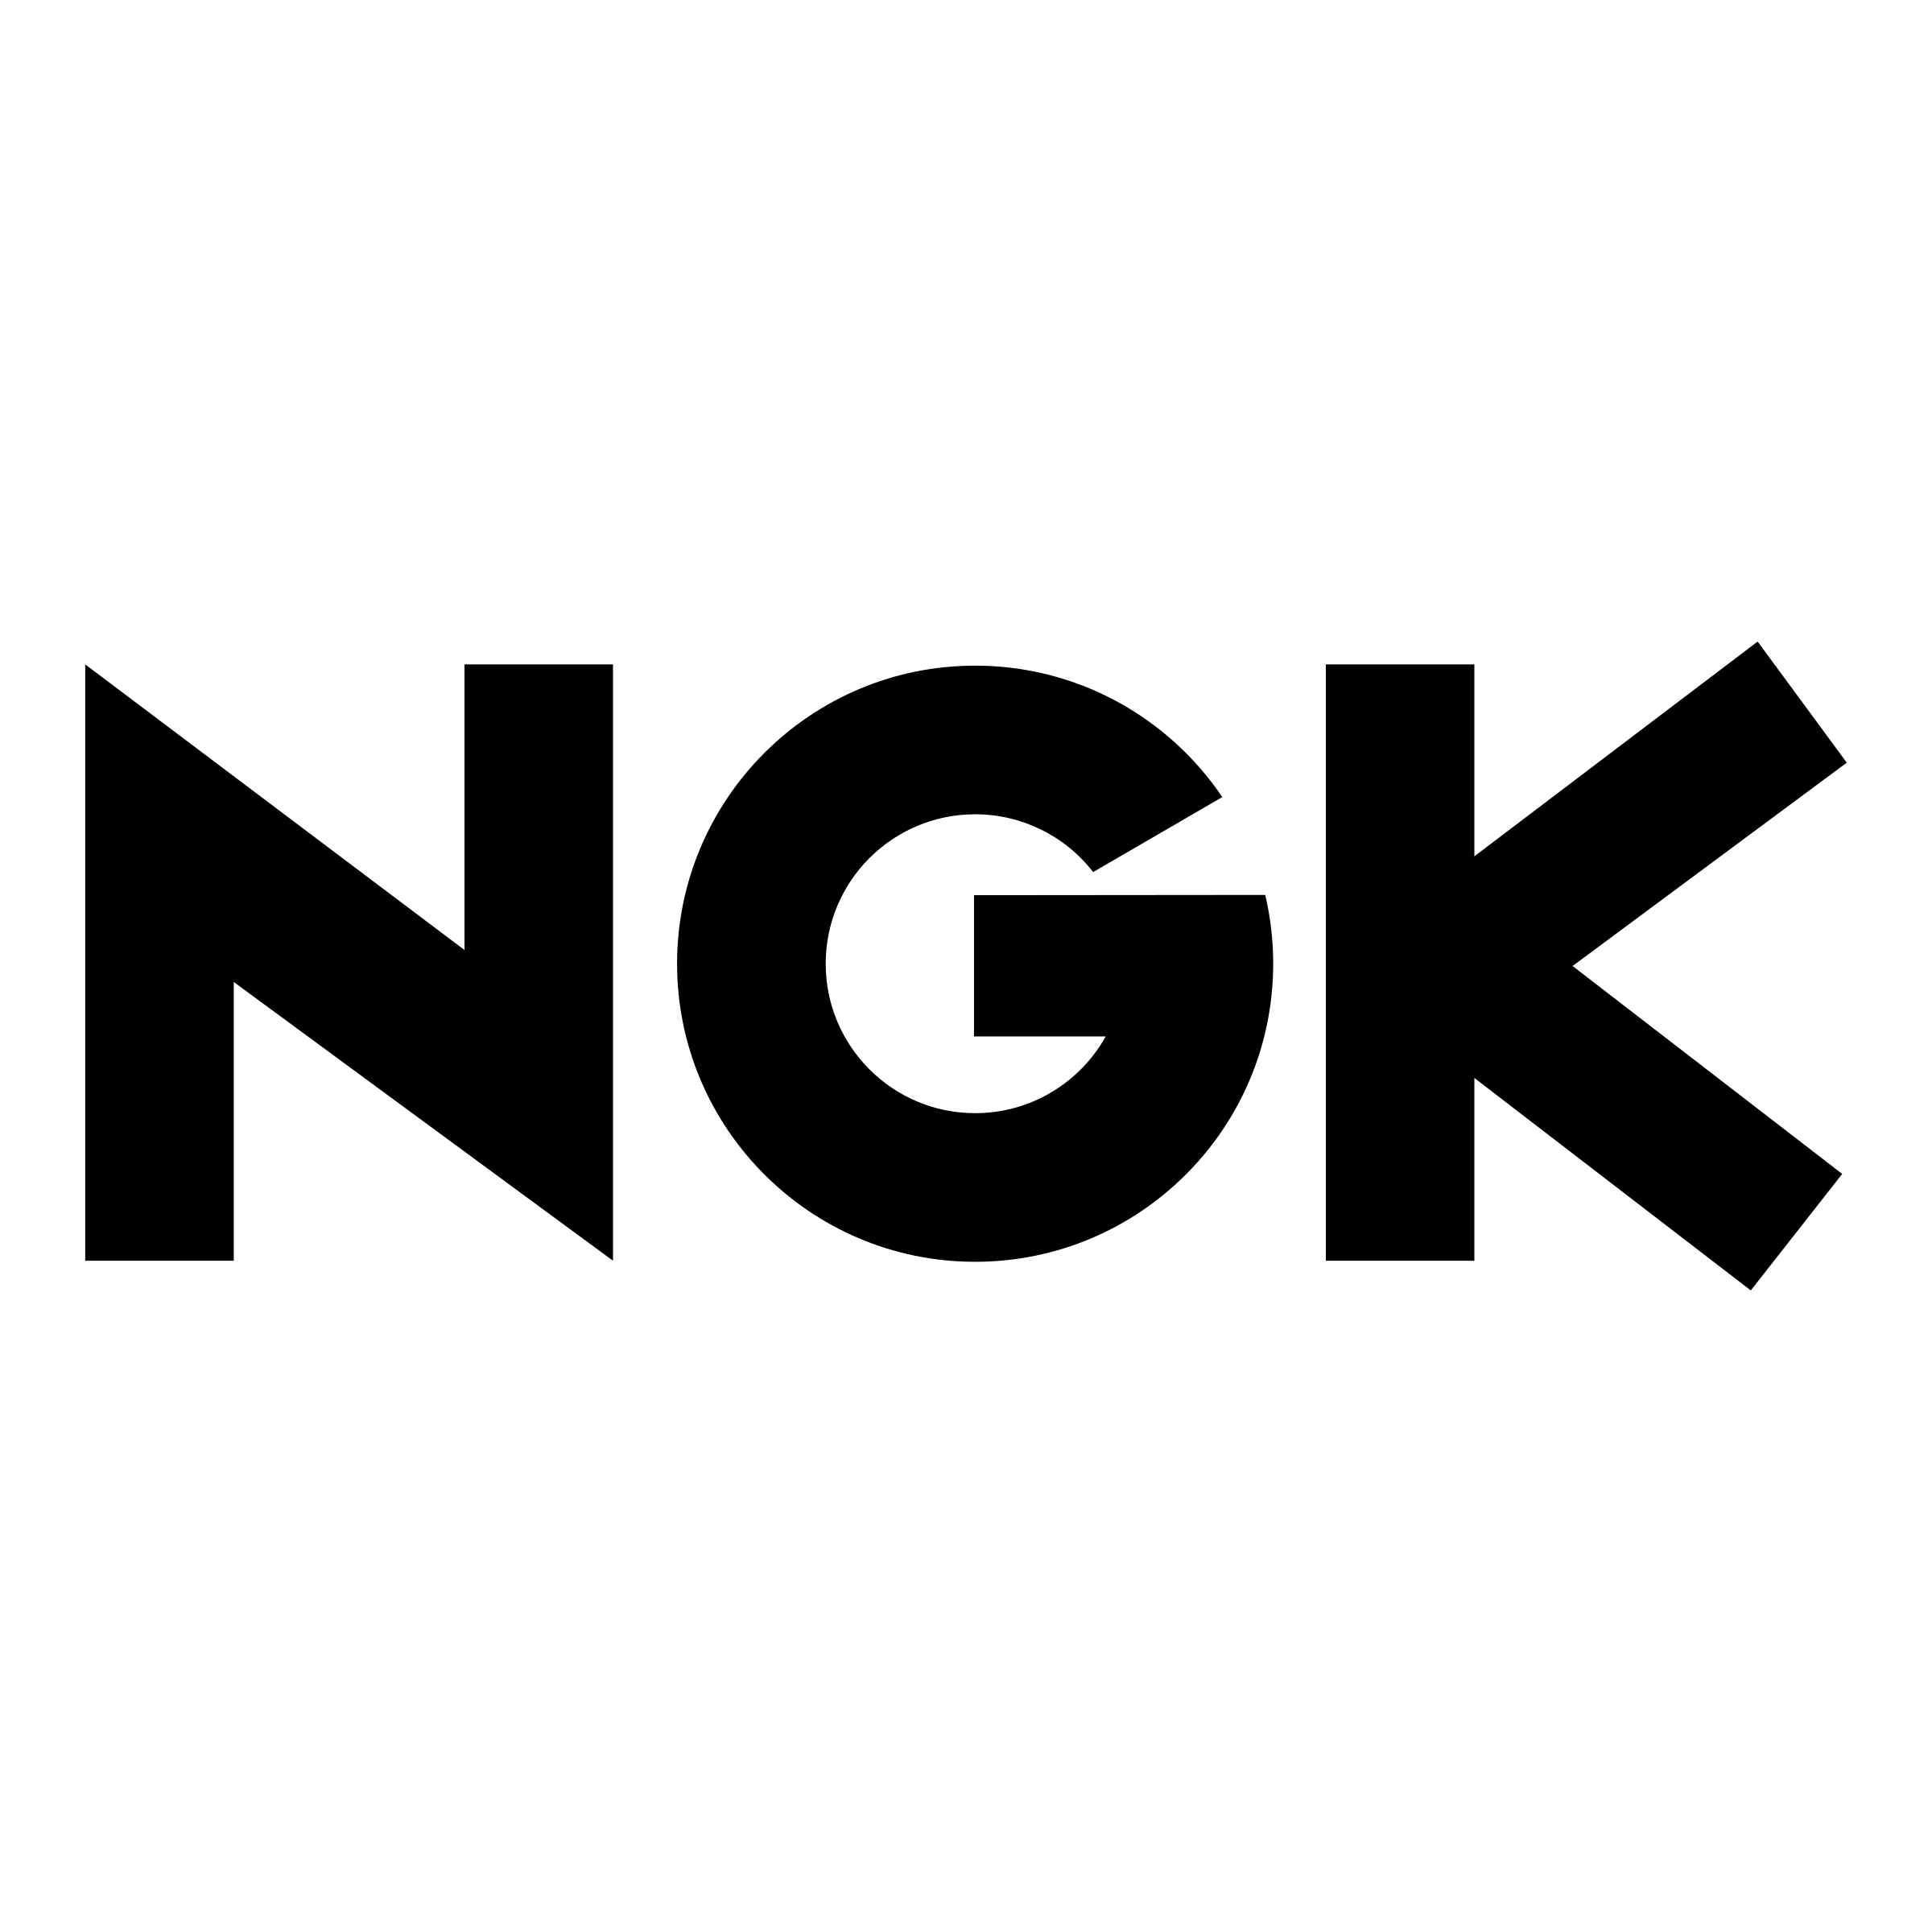 Nkg Logo - NGK Logo PNG Transparent & SVG Vector - Freebie Supply